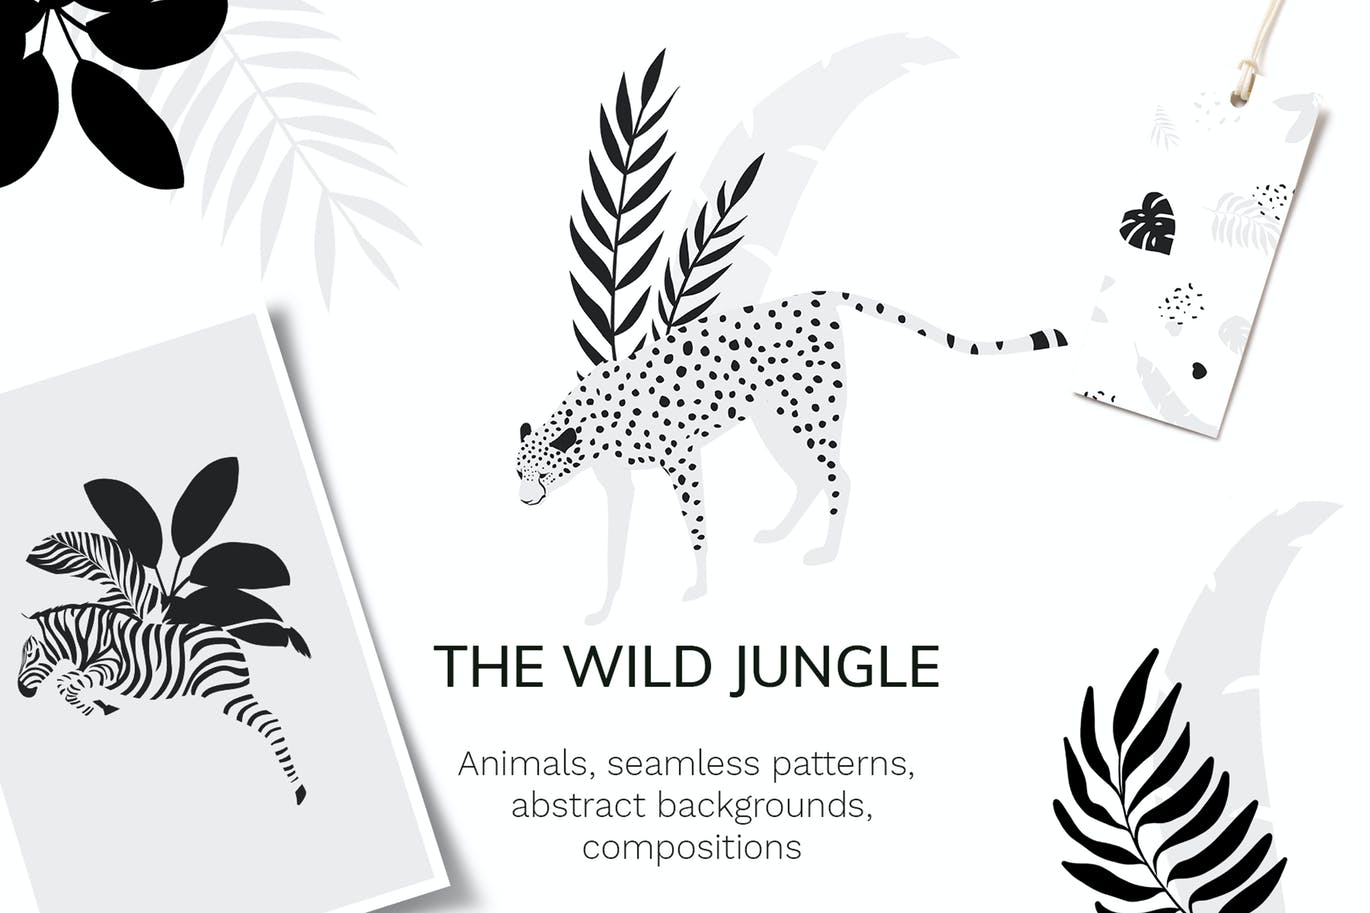 热带图案和动物剪贴画 Tropical patterns & animals clipart 图片素材 第1张